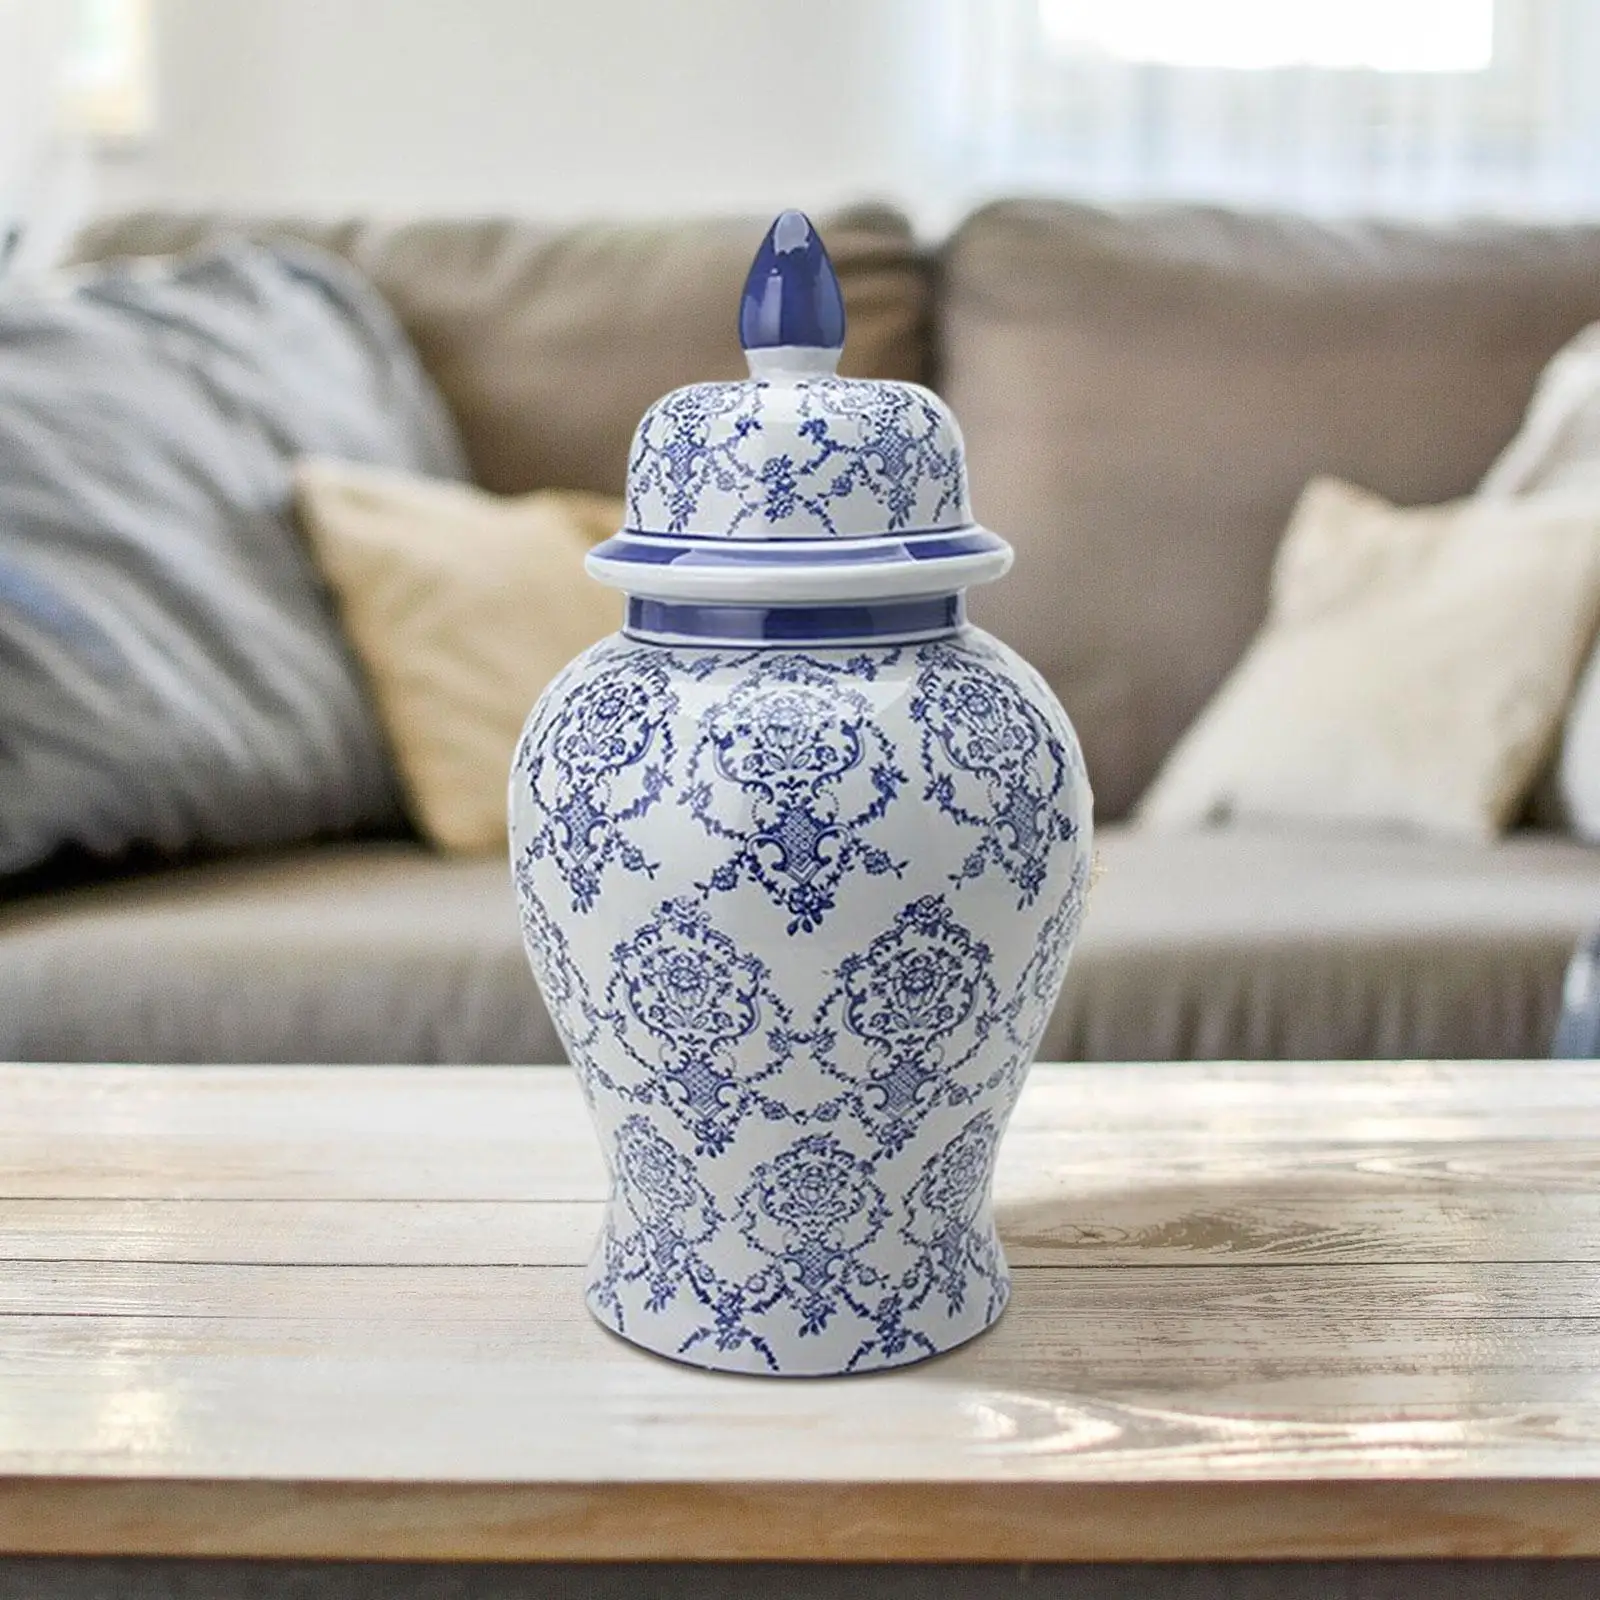 Blue White Porcelain Ginger Jar Glazed Temple Jar Plants Holder Home Decor Versatile Decorative Ceramic Flower Vase Desktop